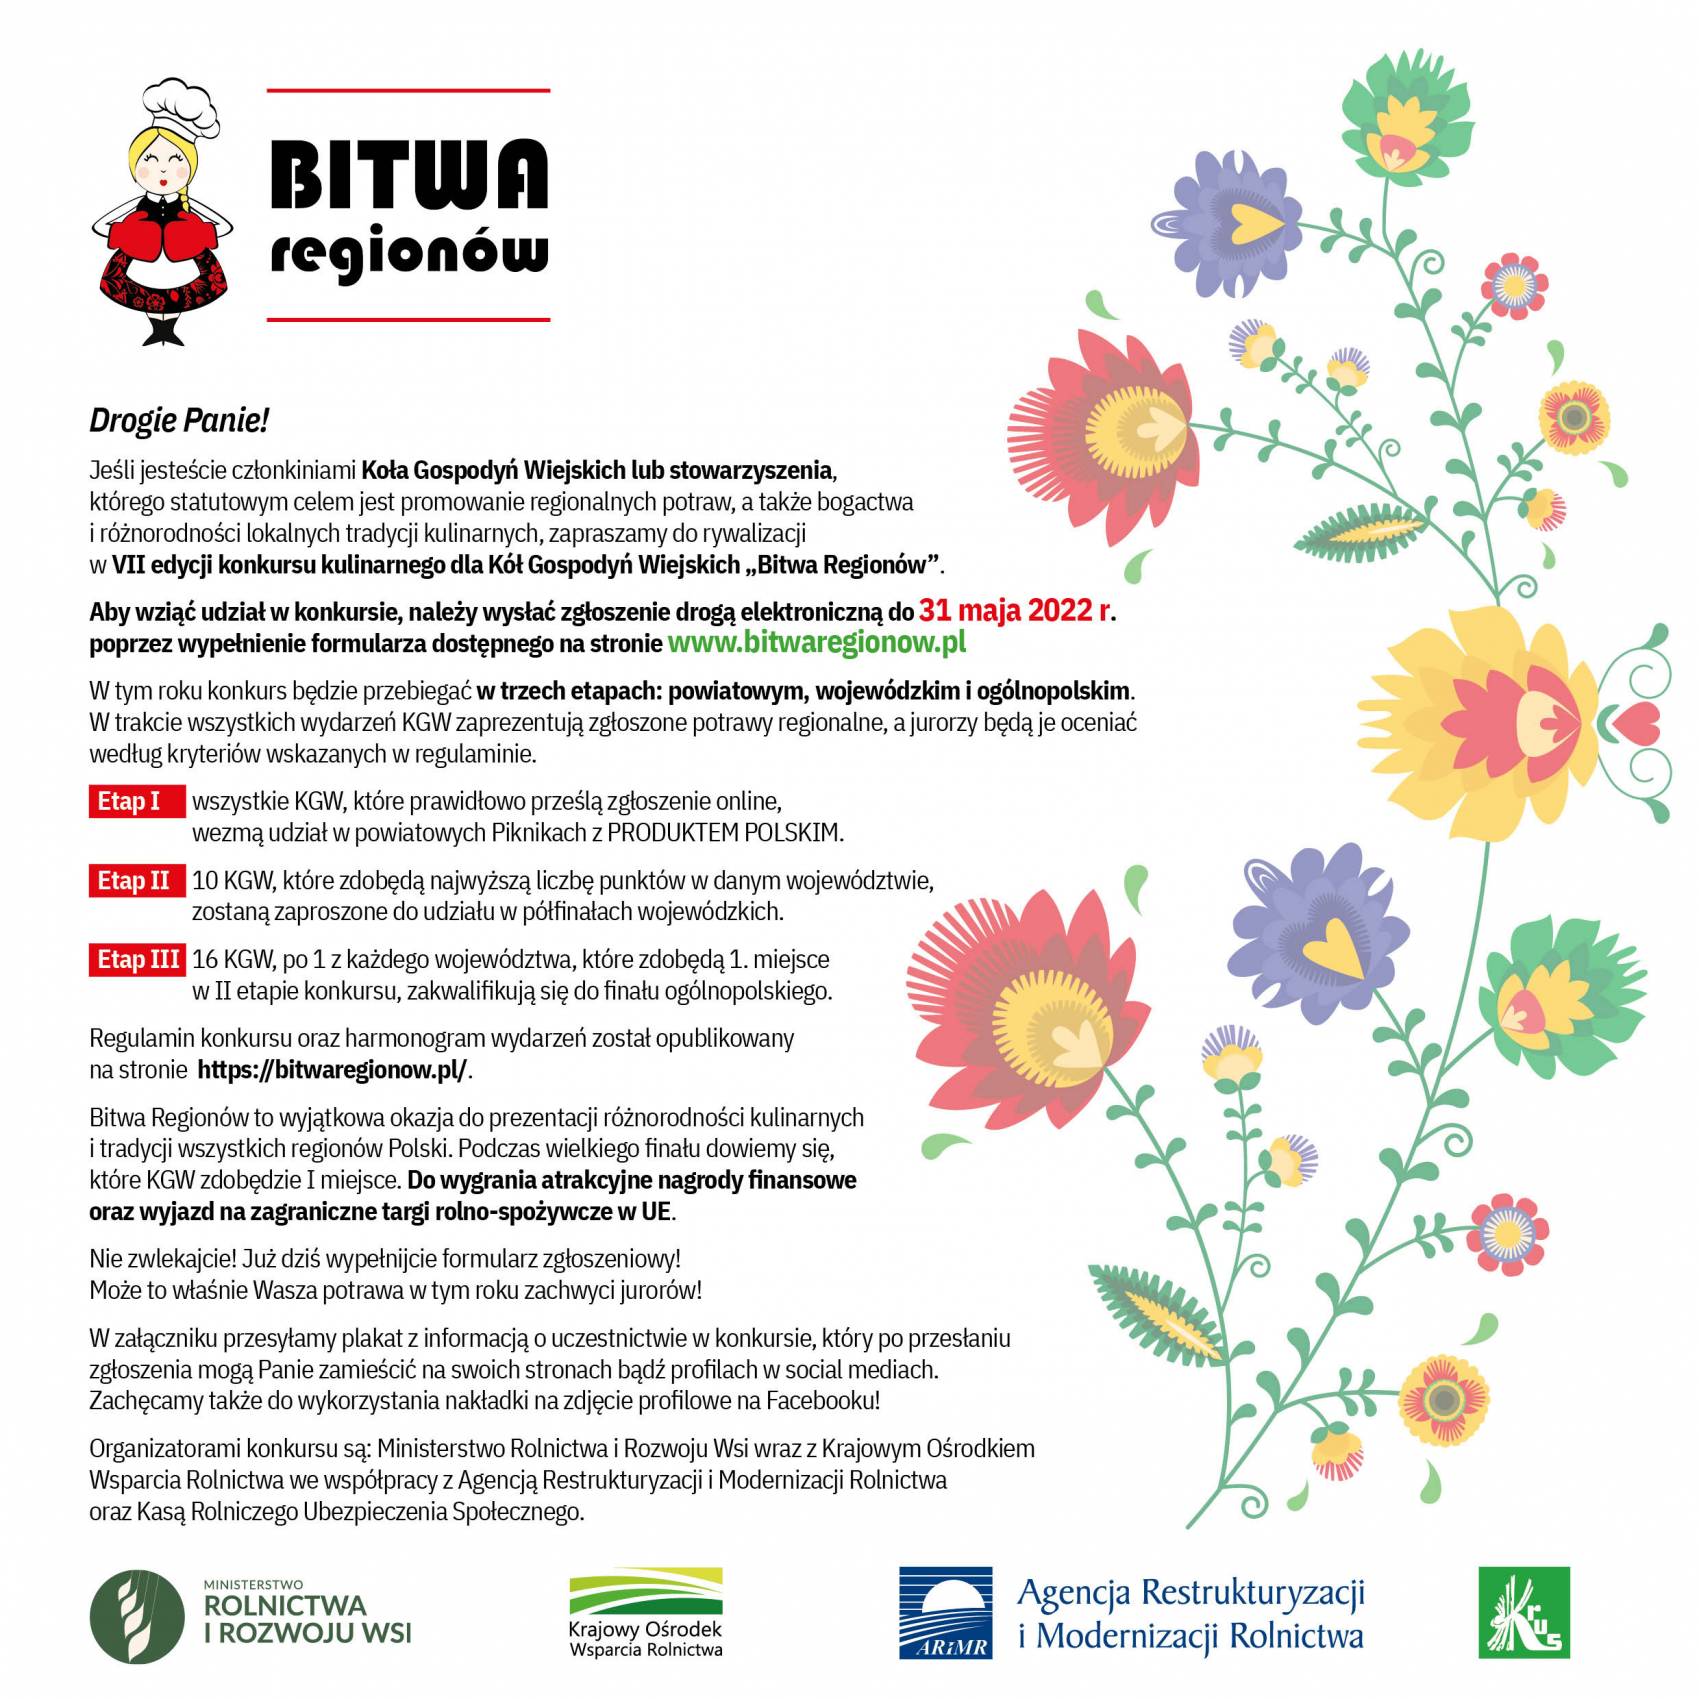 BITWA_REGIONOW_2022_zaproszeni_20220525-105021_1